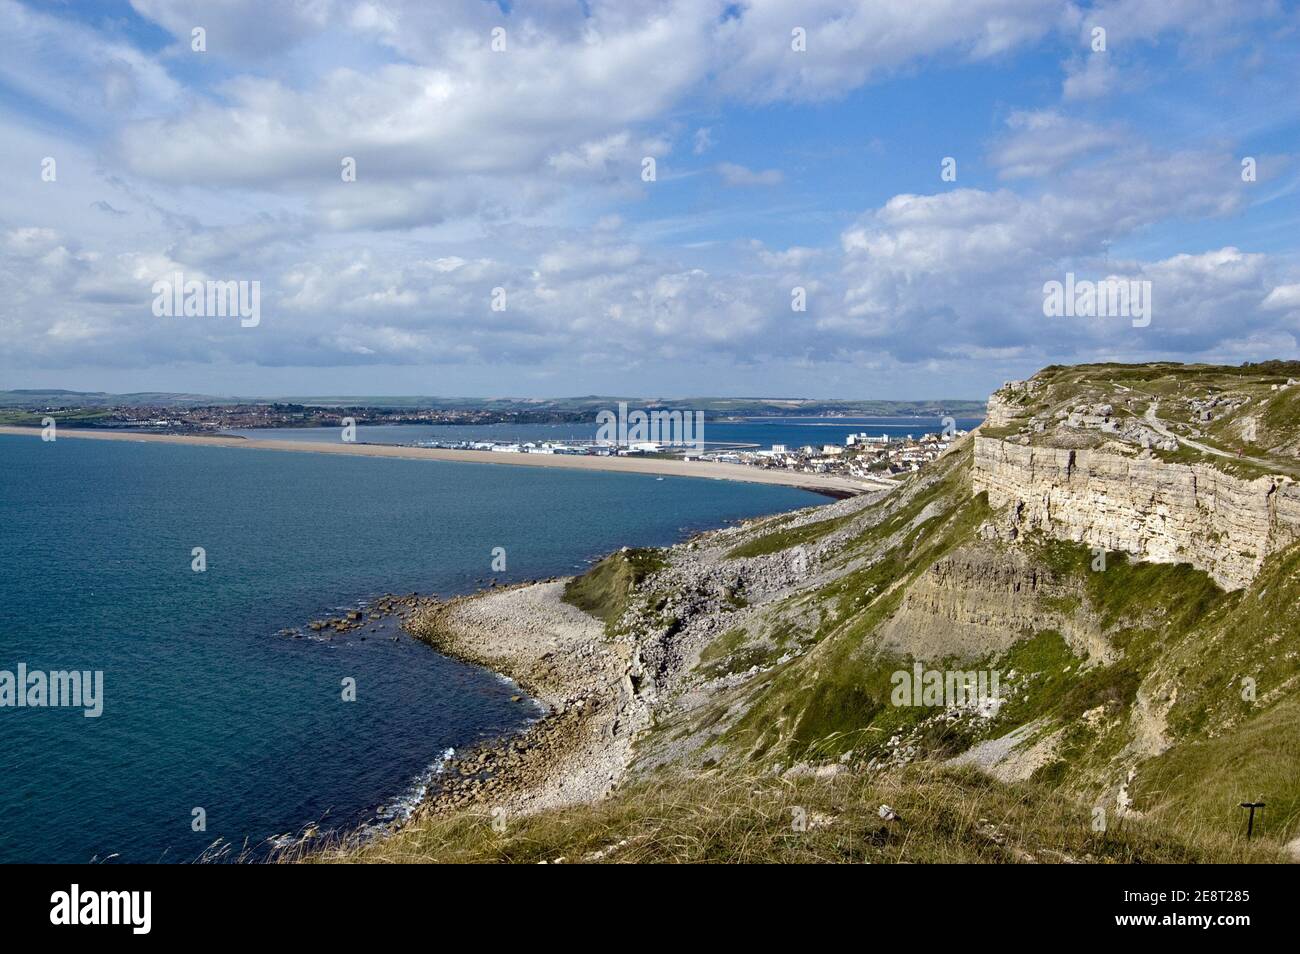 Blick von einem Steinbruch auf der Isle of Portland über den Chesil Beach Causeway nach Weymouth an der Dorset Coast, England. Stockfoto